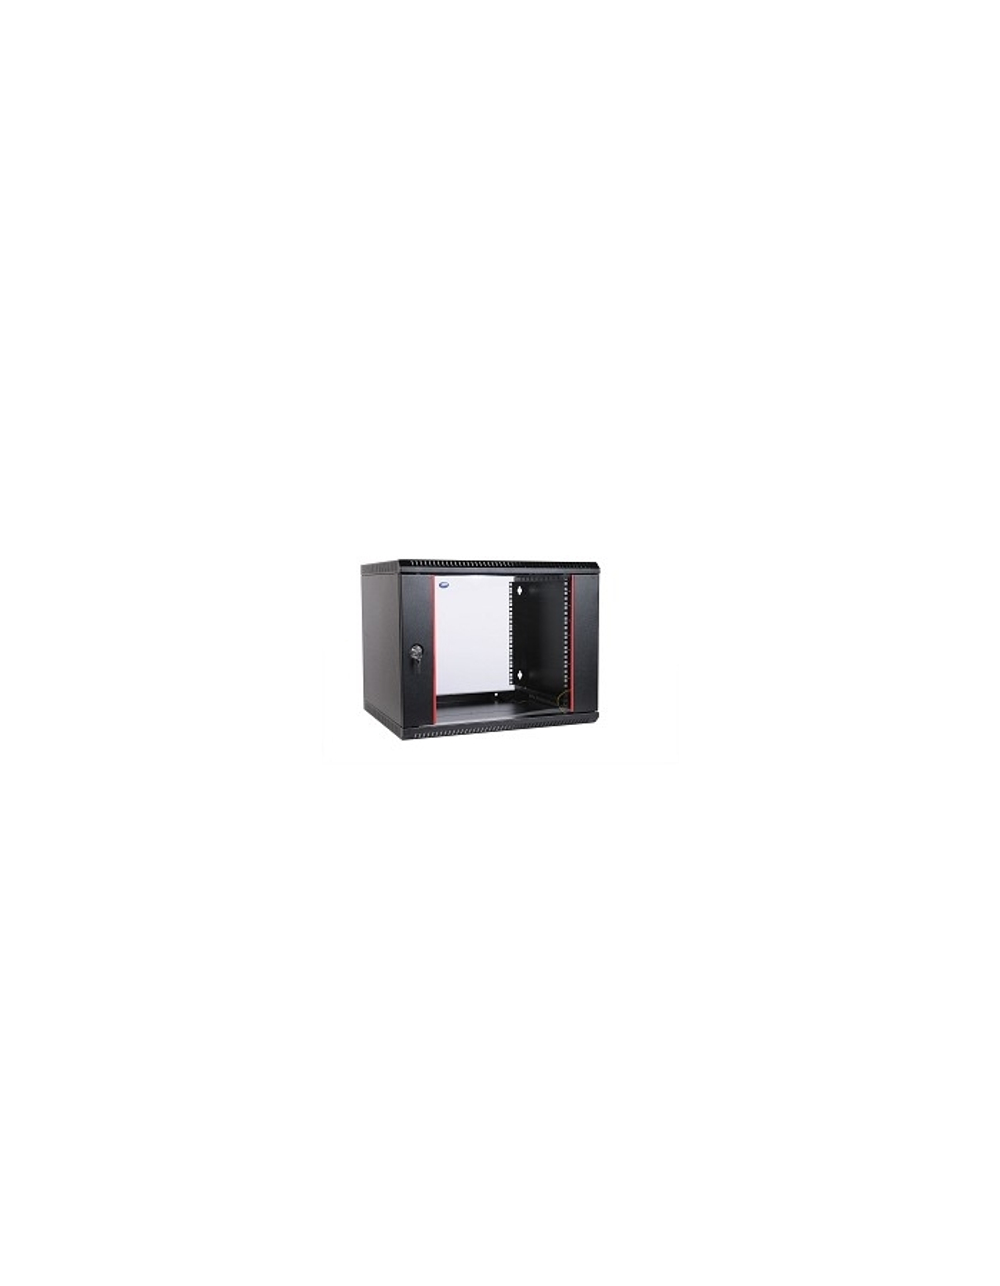 ЦМО Шкаф телекоммуникационный настенный разборный 9U (600х350) дверь стекло,цвет черный (ШРН-Э-9.350-9005)